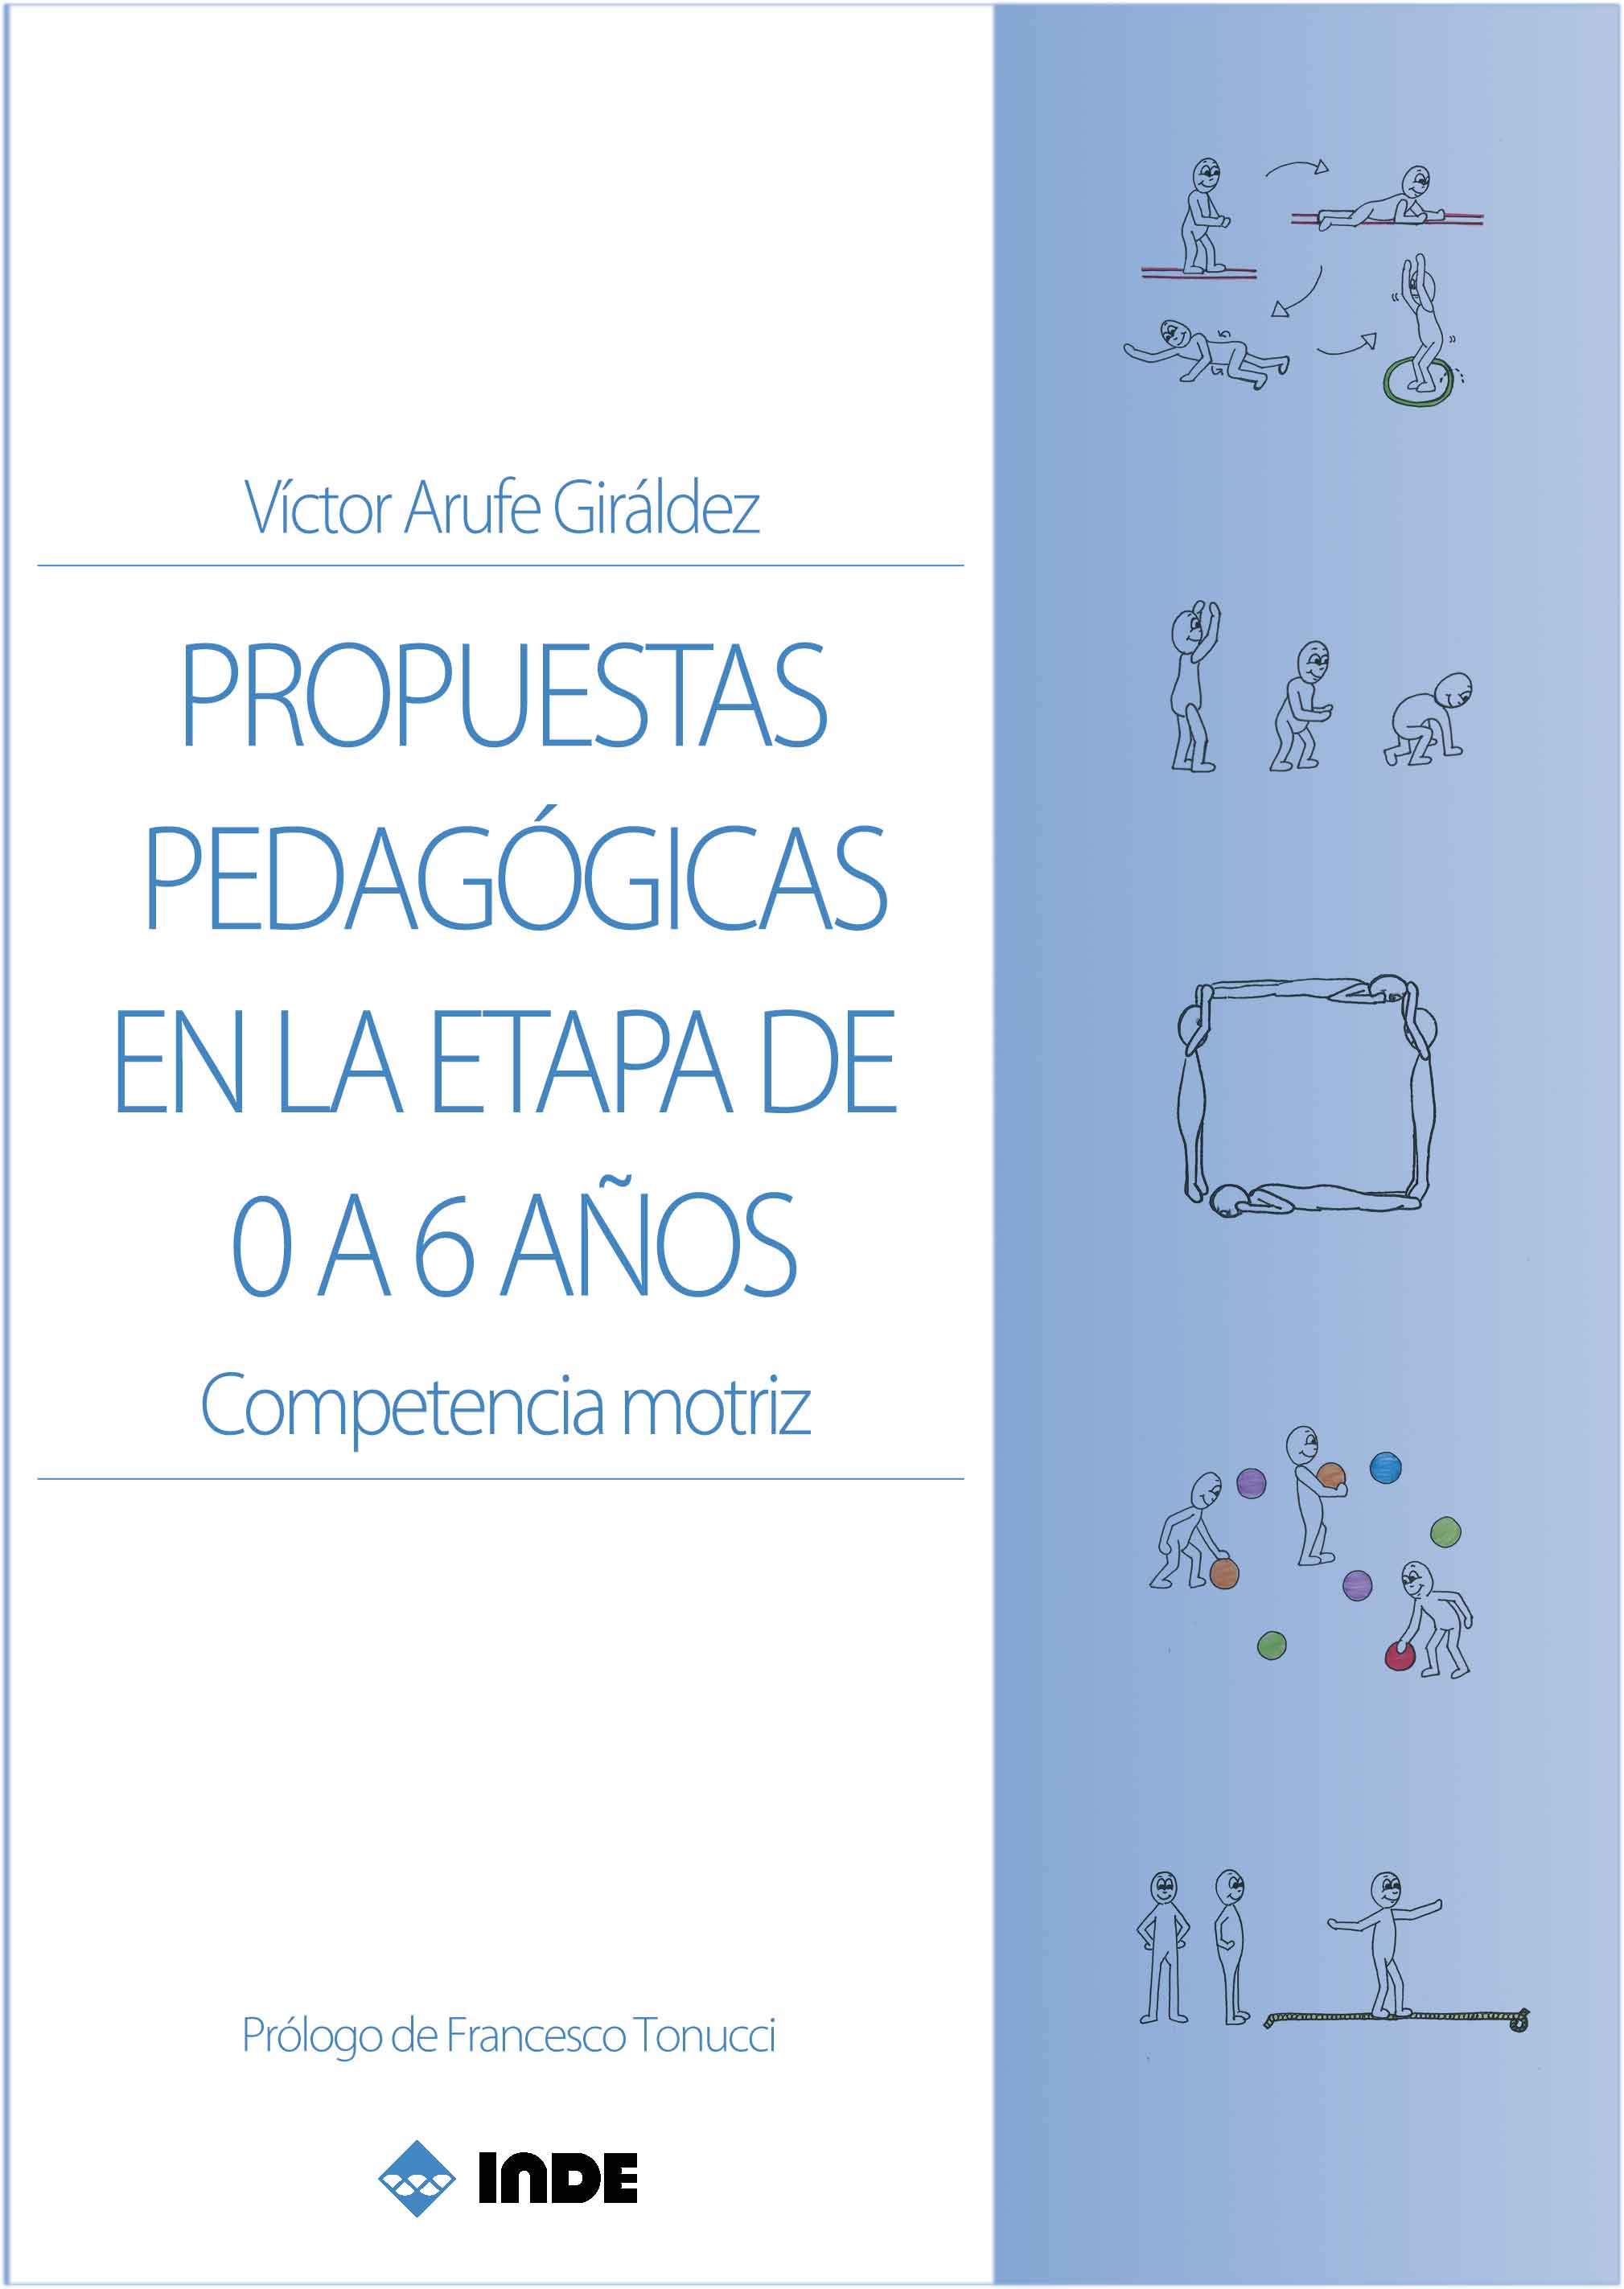 Imagen de portada del libro Propuestas pedagógicas en la etapa de 0 a 6 años. Competencia motriz.